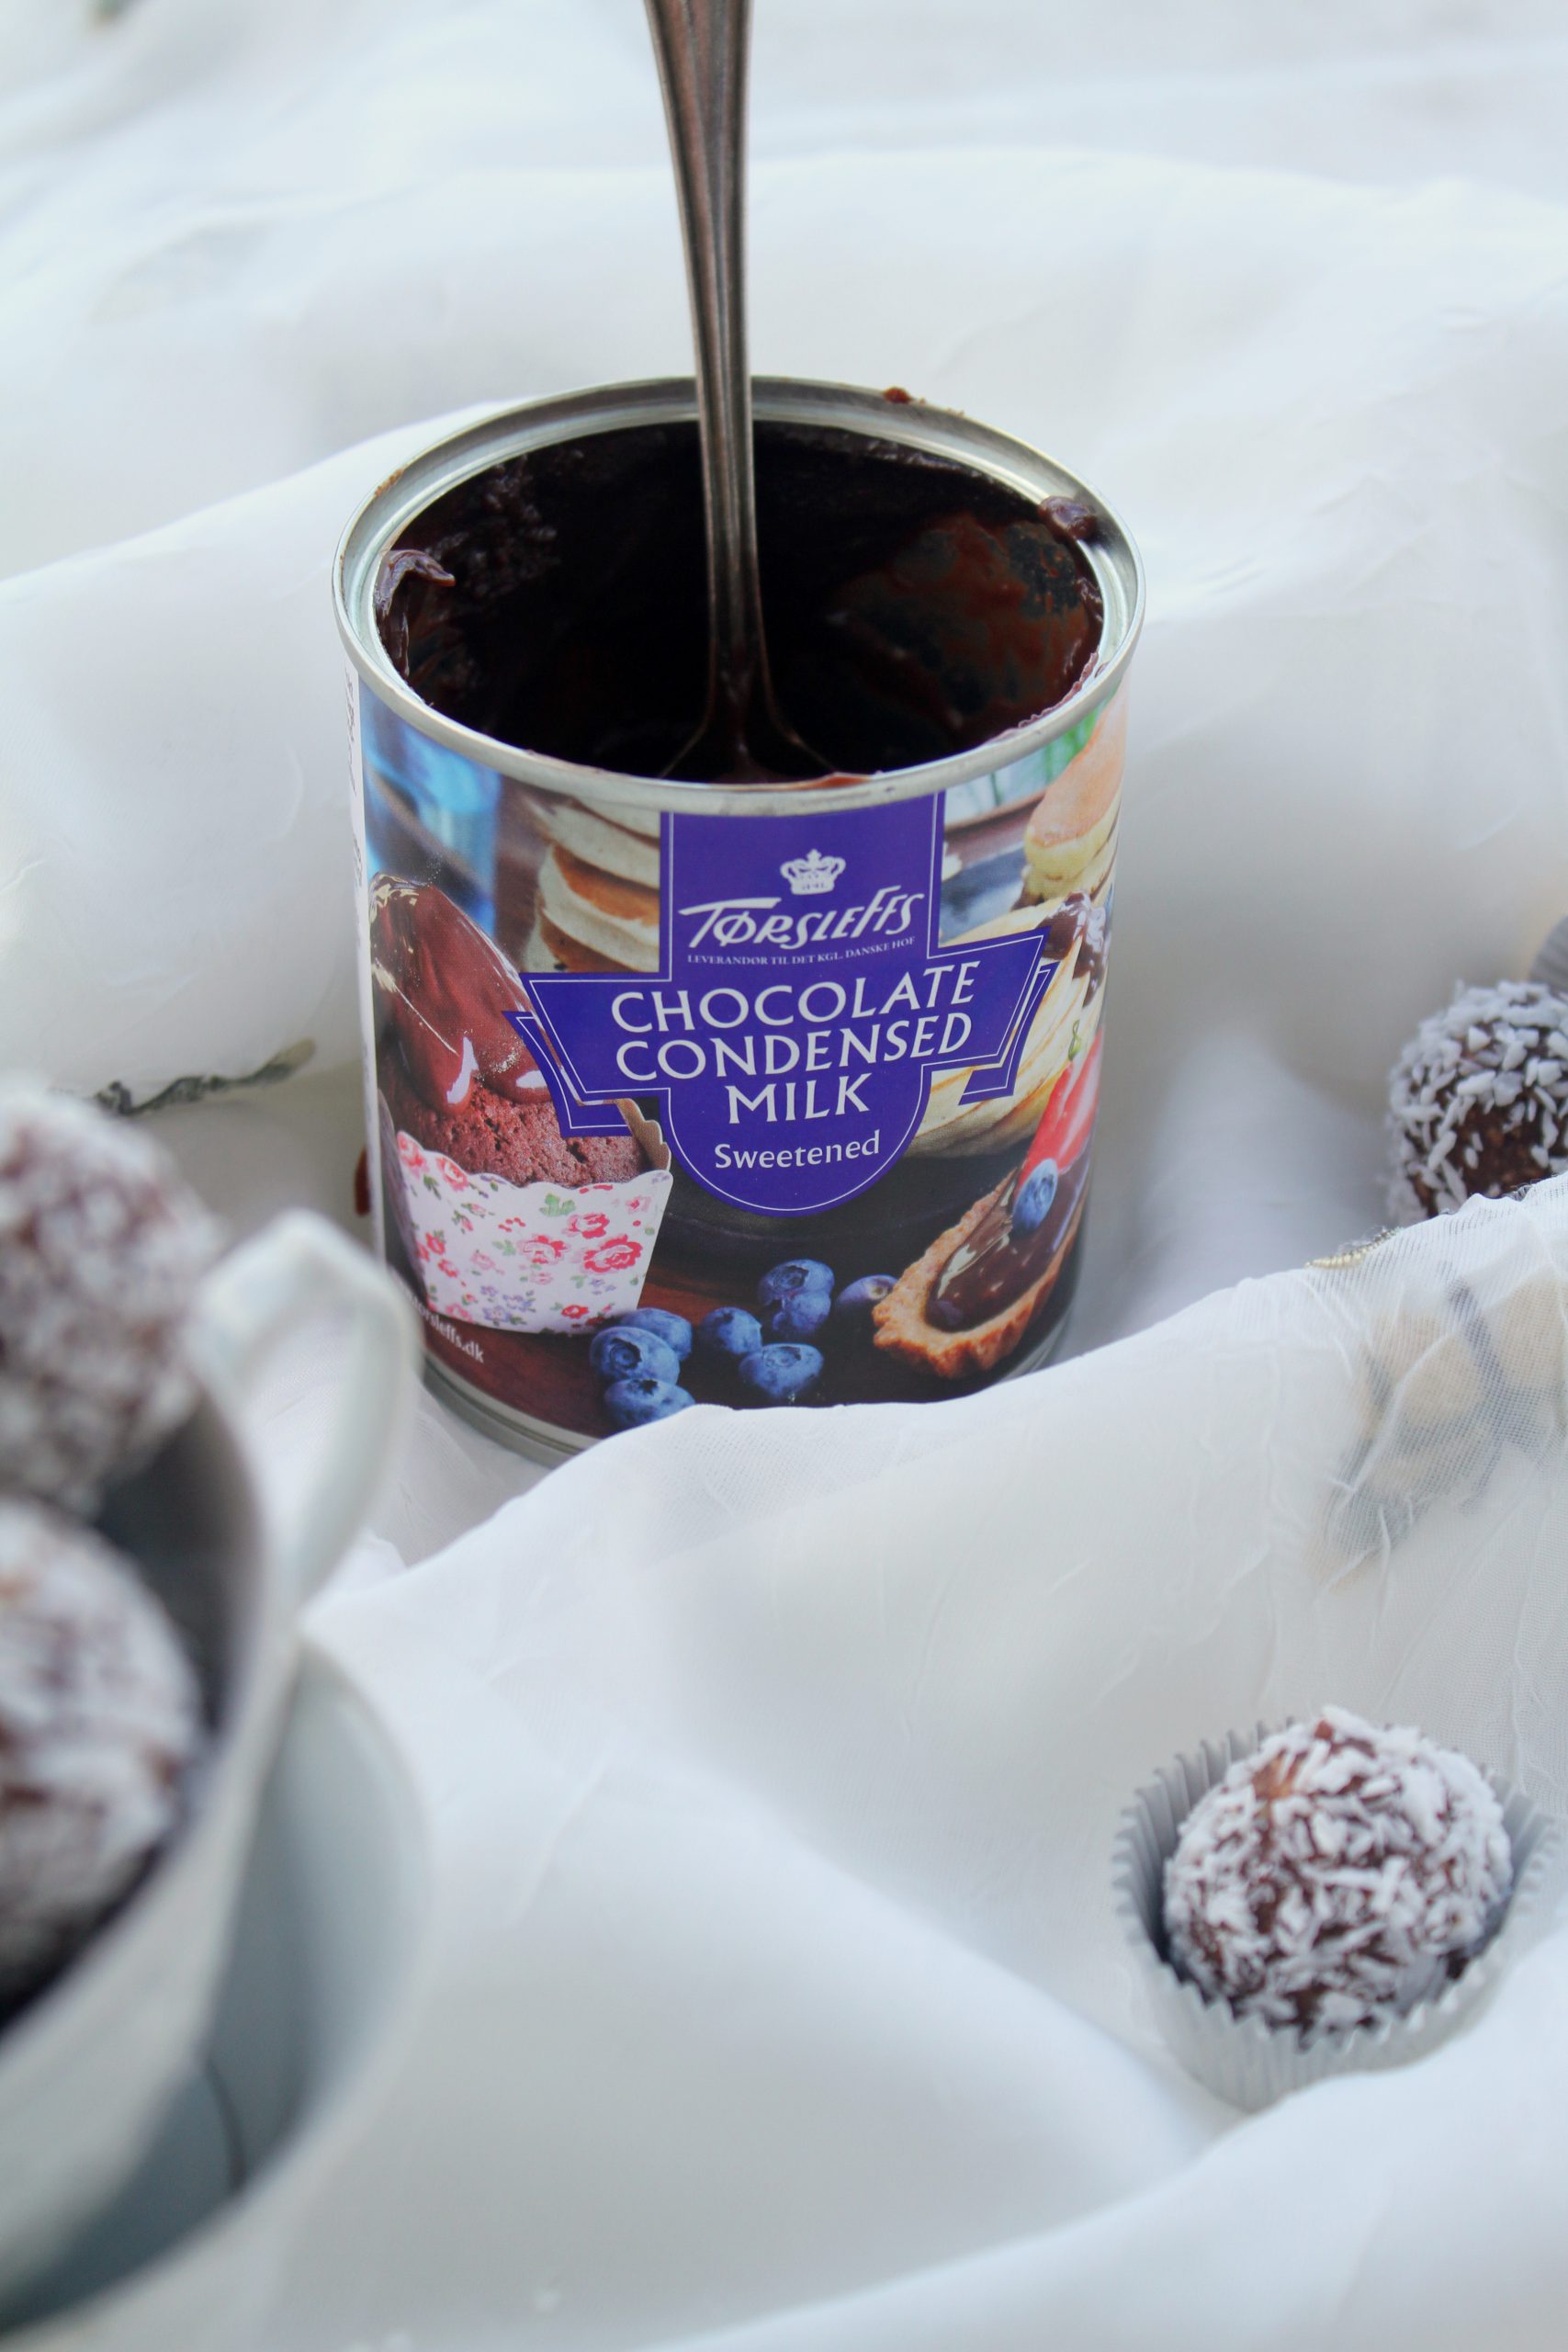 Chokladbollar med kondenserad Chokladmjölk